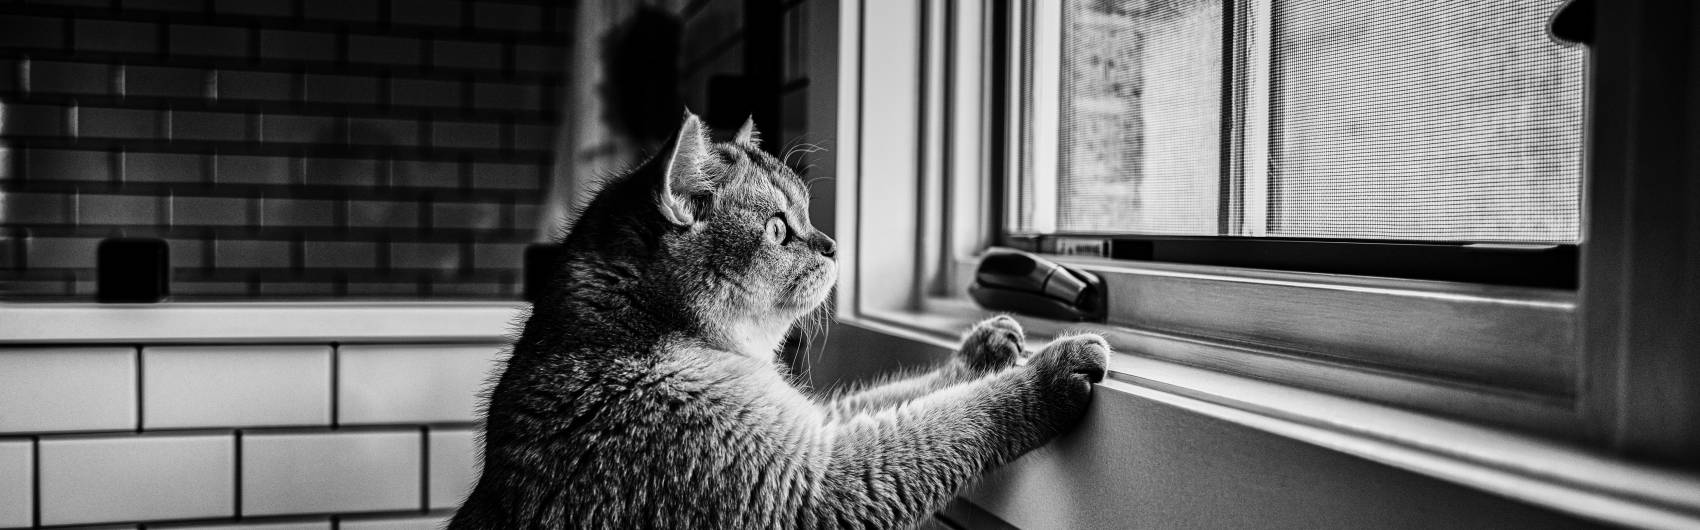 Kat kijkt door venster